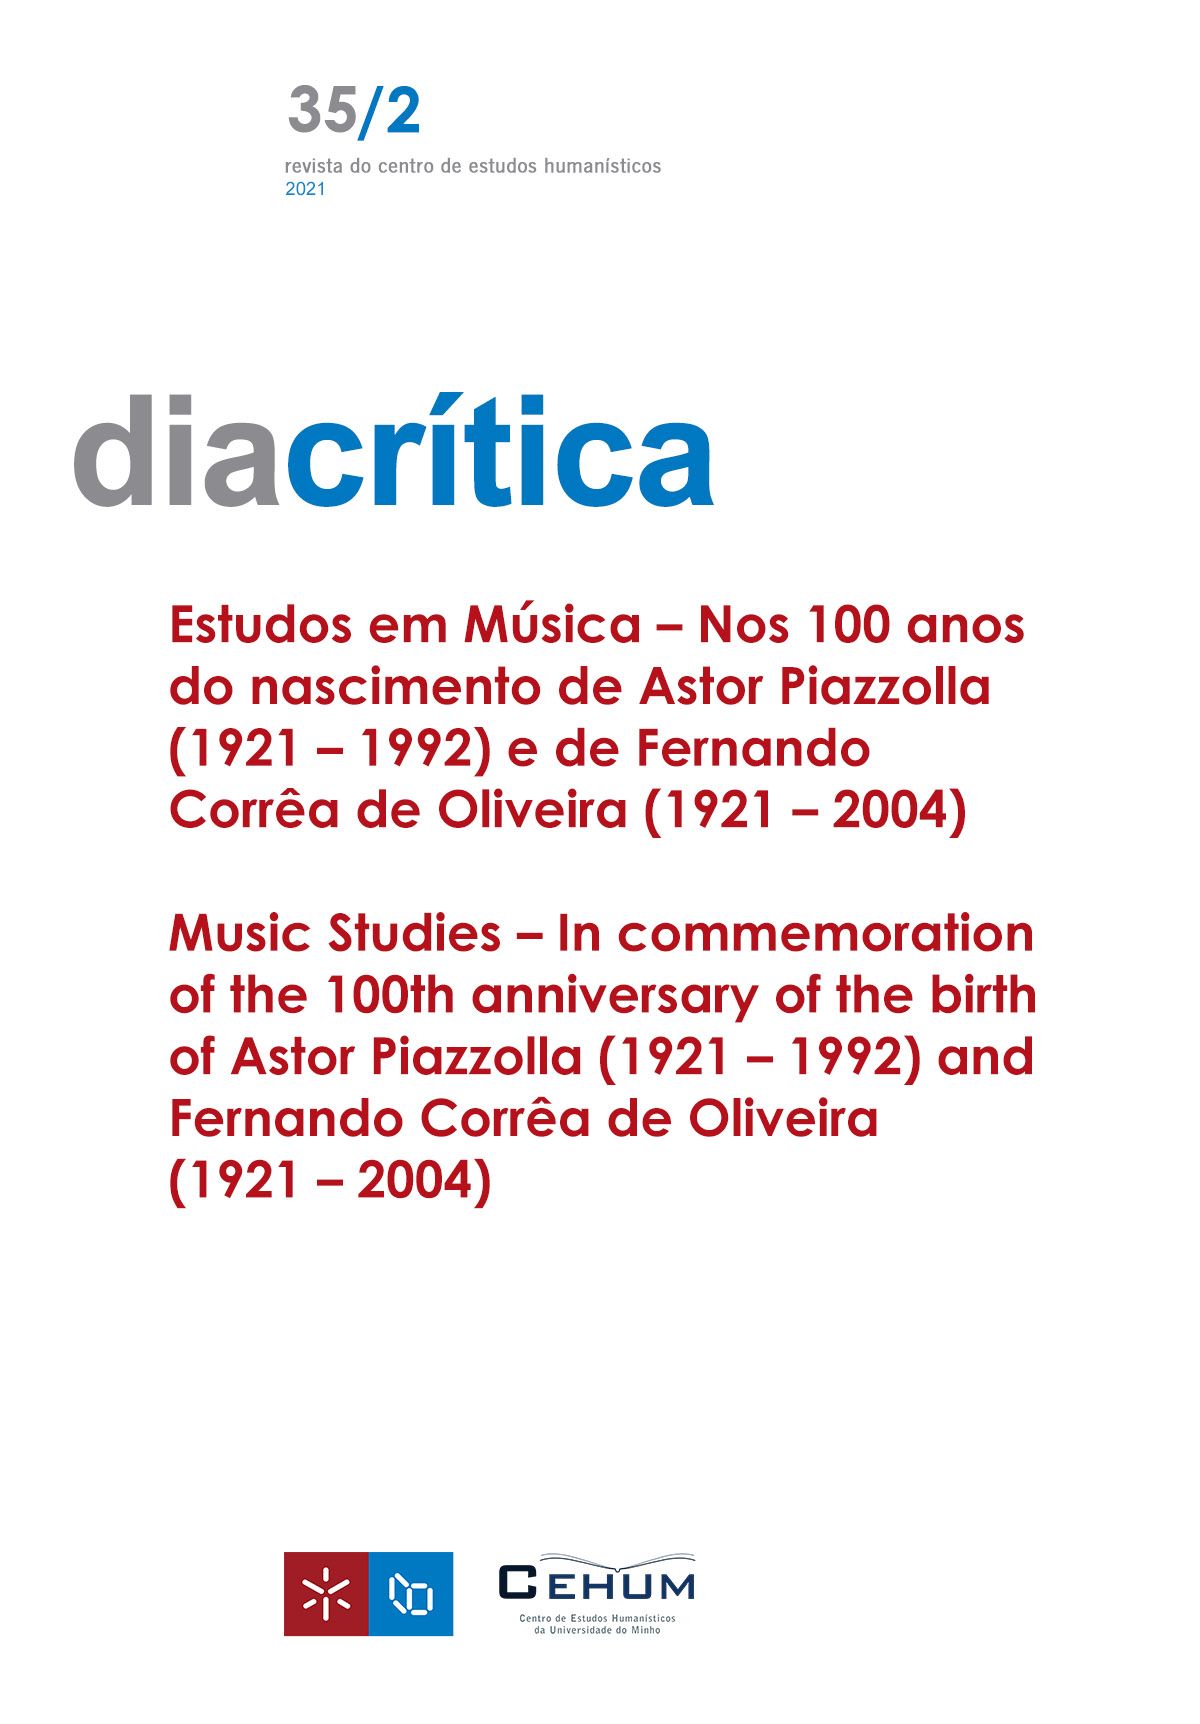 					Ver Vol. 35 N.º 2 (2021): Estudos em Música – Nos 100 anos do nascimento de Astor Piazzolla (1921 – 1992) e de Fernando Corrêa de Oliveira (1921 – 2004)
				